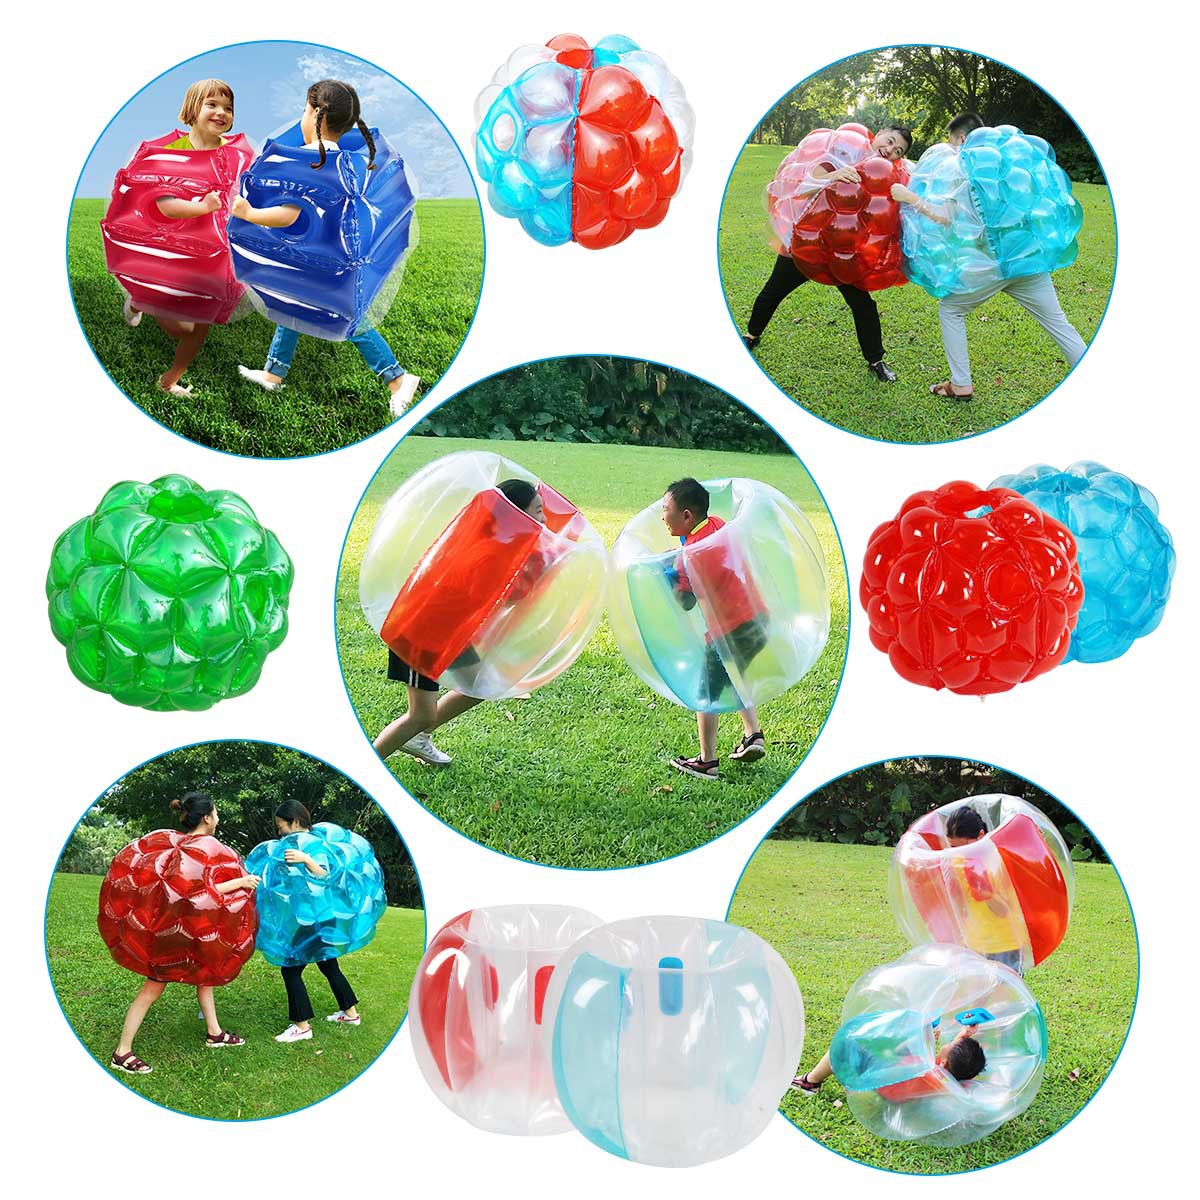 现货趣味充气碰碰球充气碰撞球泡泡球户外草地撞击球波波球玩具